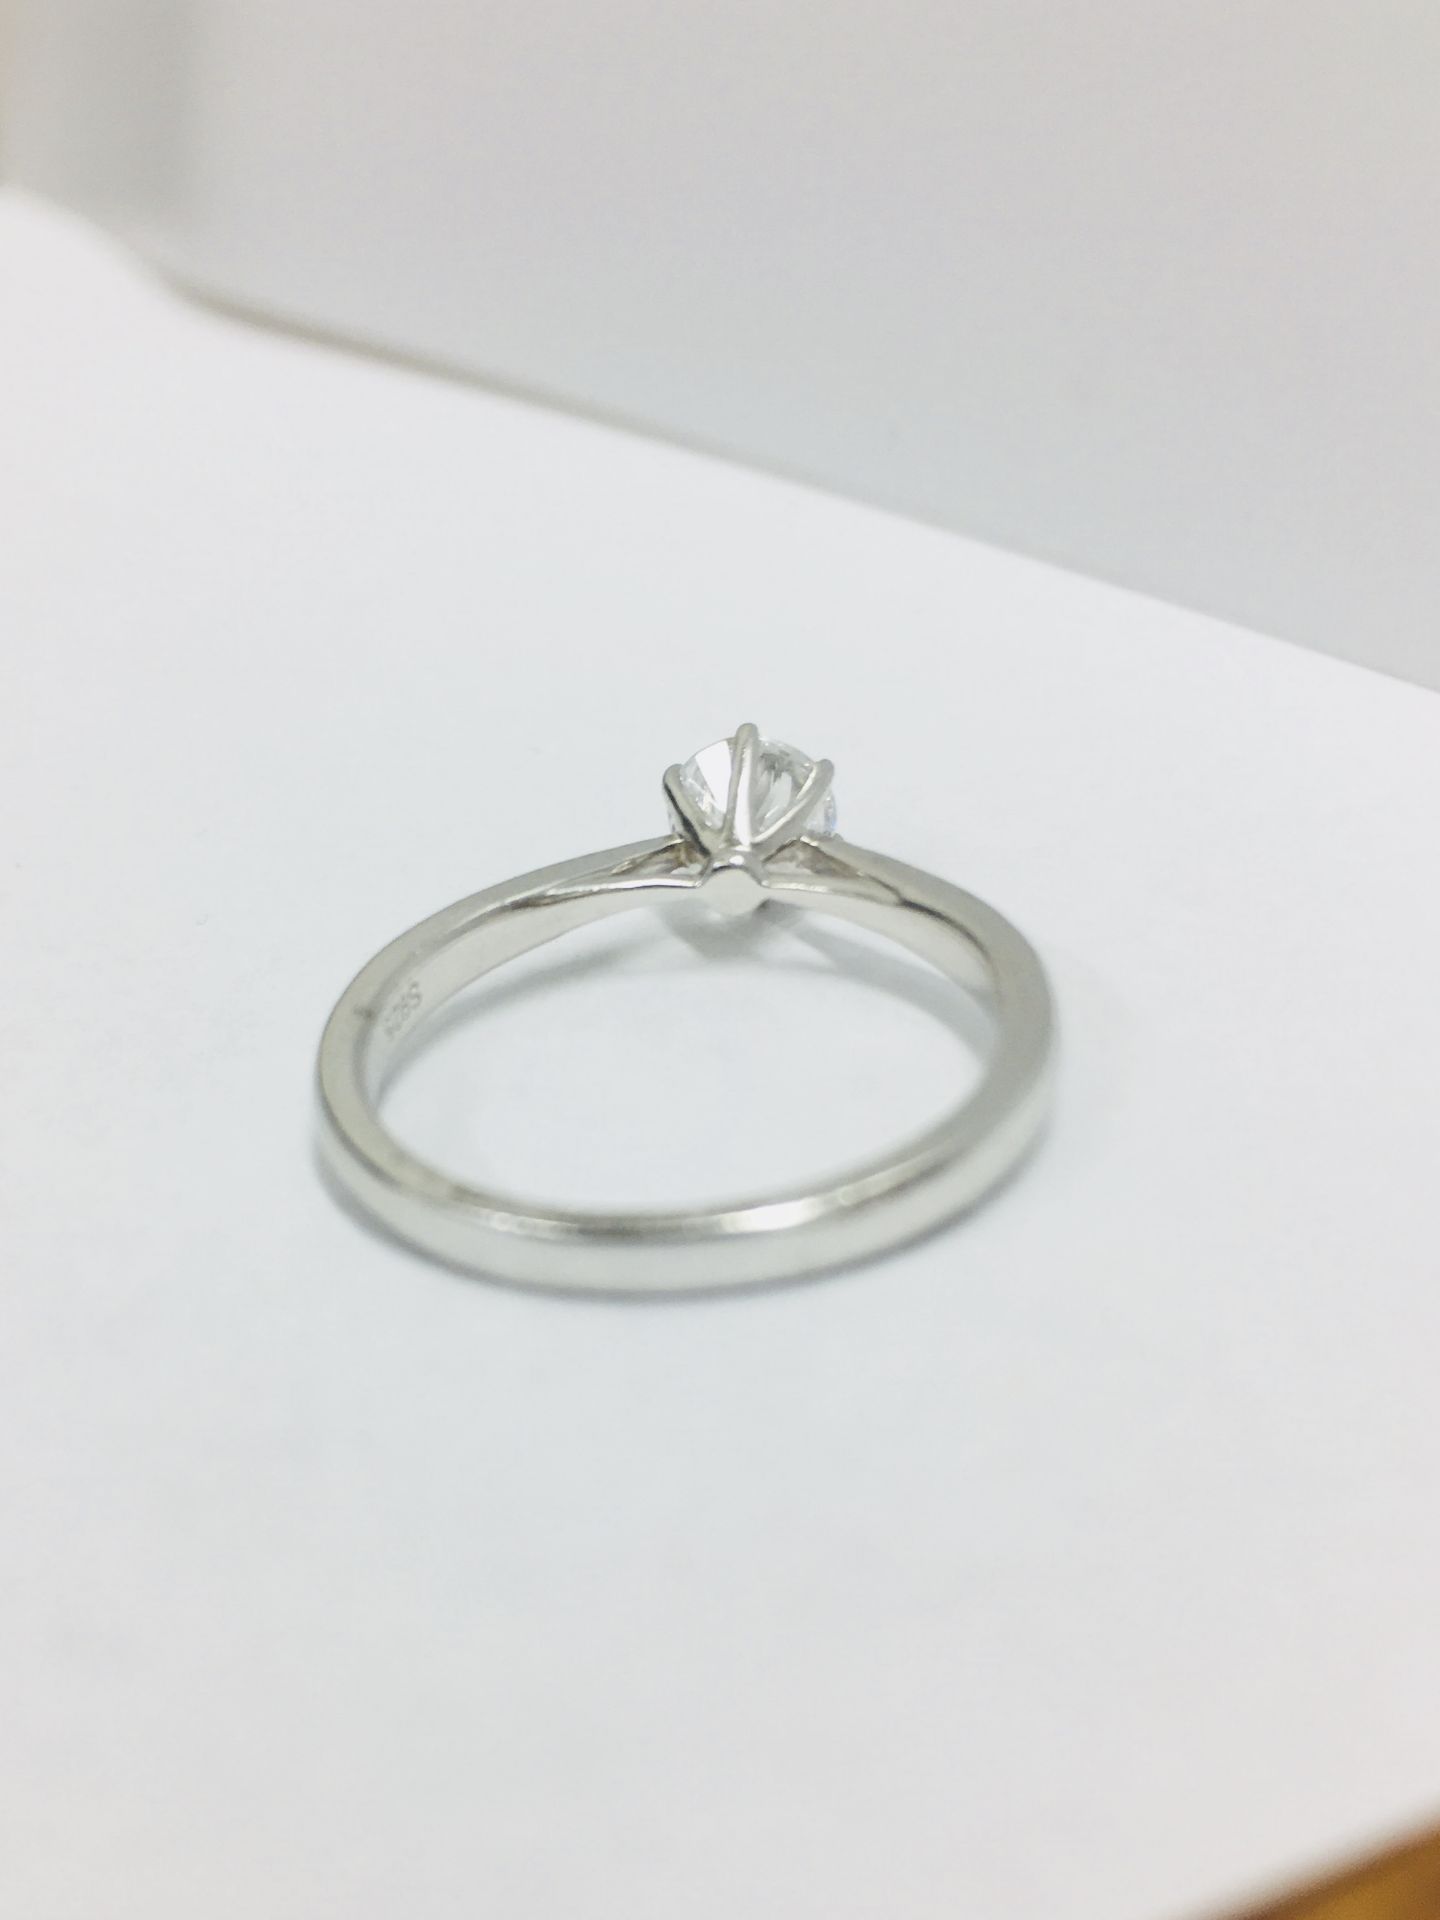 Platinum diamond solitaire ring,050ct brilliant cut diamond h colour vs clarity(clarity enhanced), - Image 3 of 4